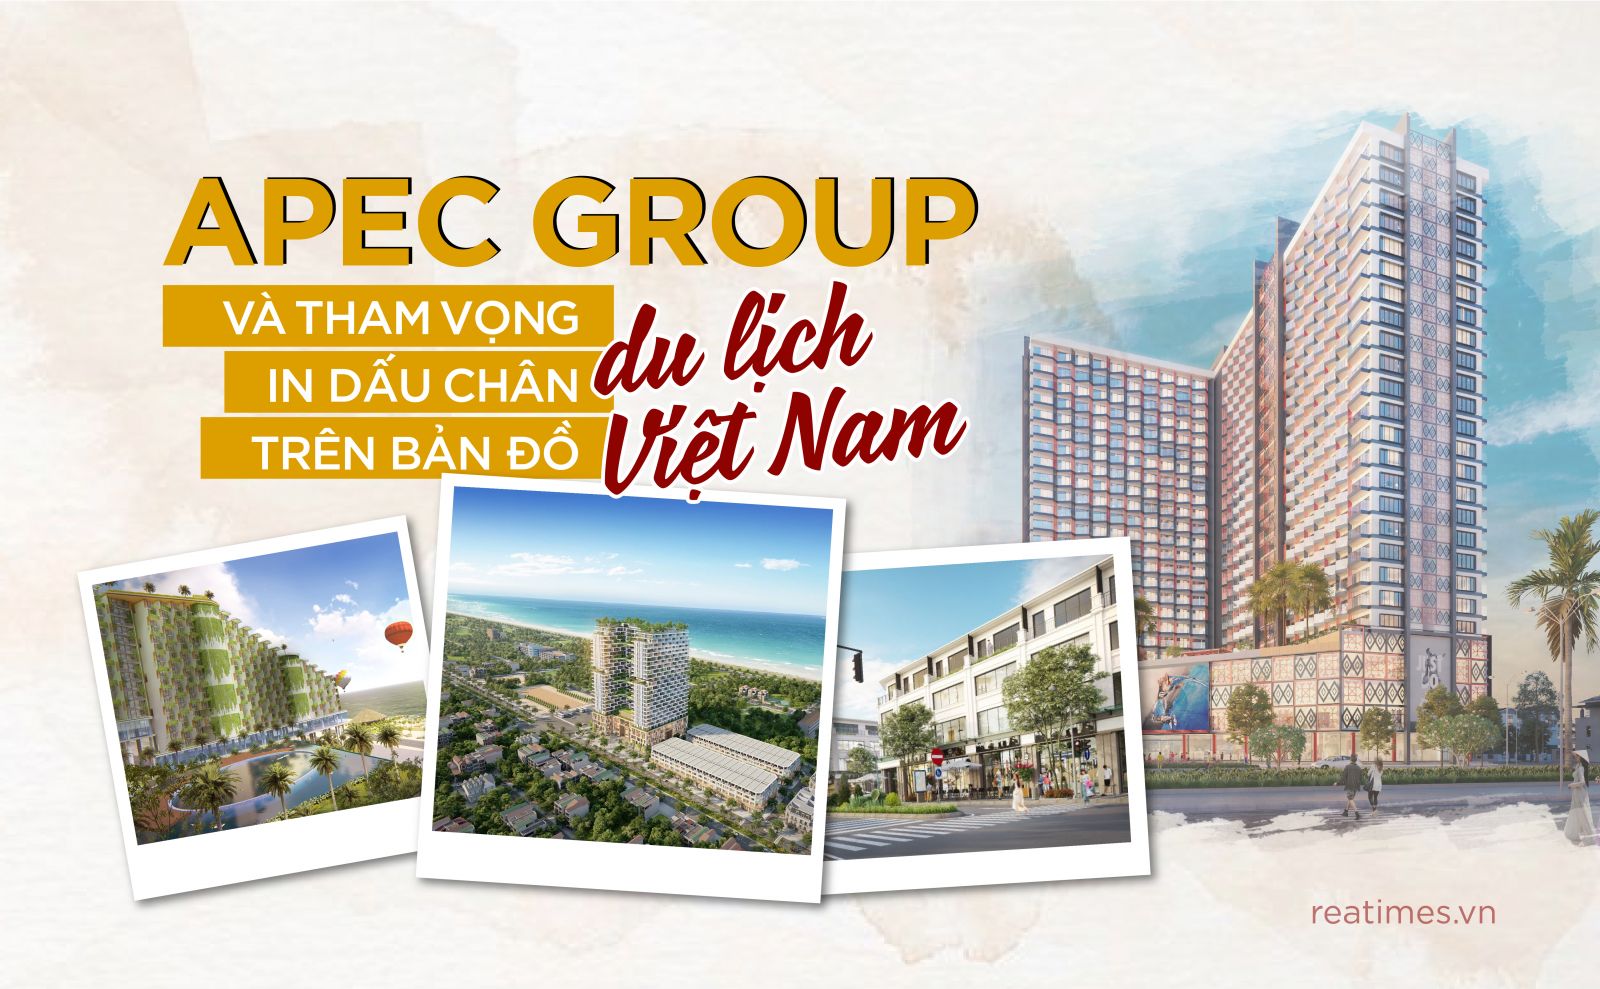 Apec Group và tham vọng in dấu chân trên bản đồ du lịch Việt Nam